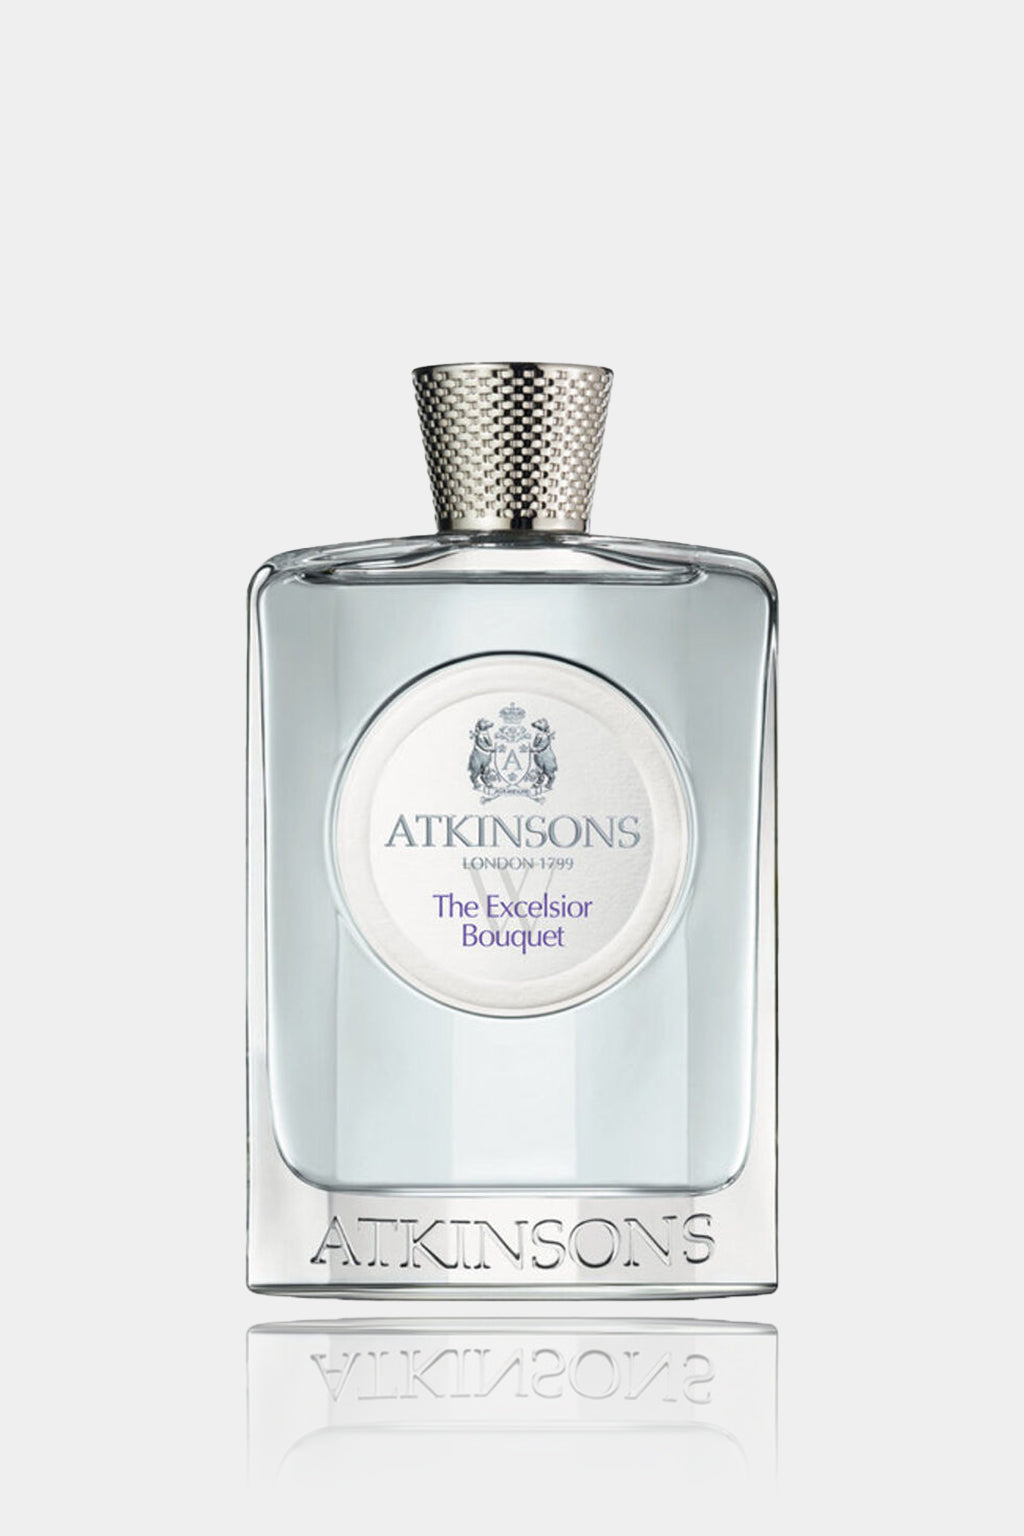 Atkinsons - The Excelsior Bouquet Eau de Toilette